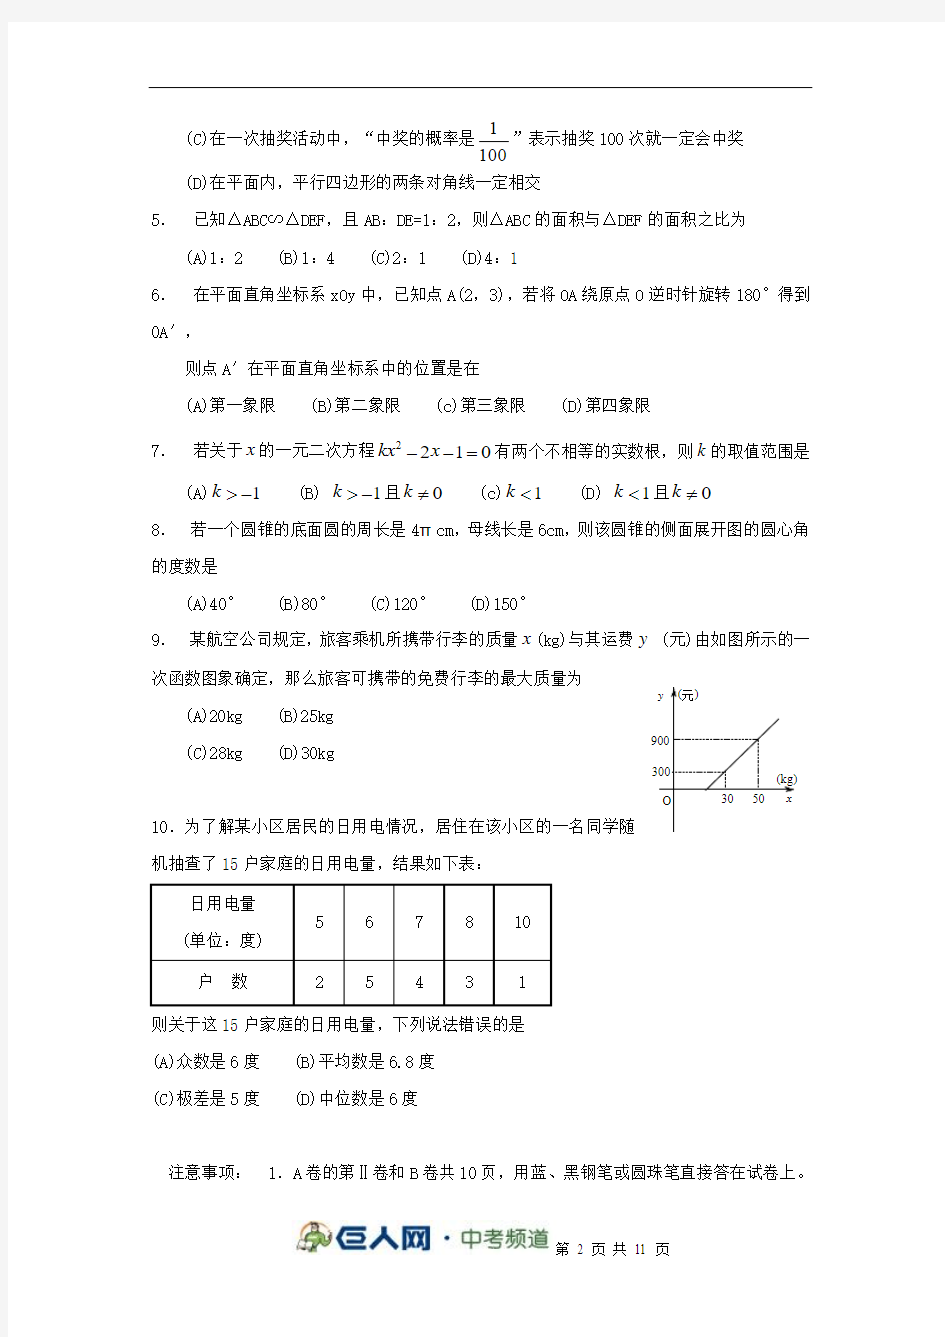 2009年四川省成都市高中阶段教育学校统一招生考试数学试题及答案